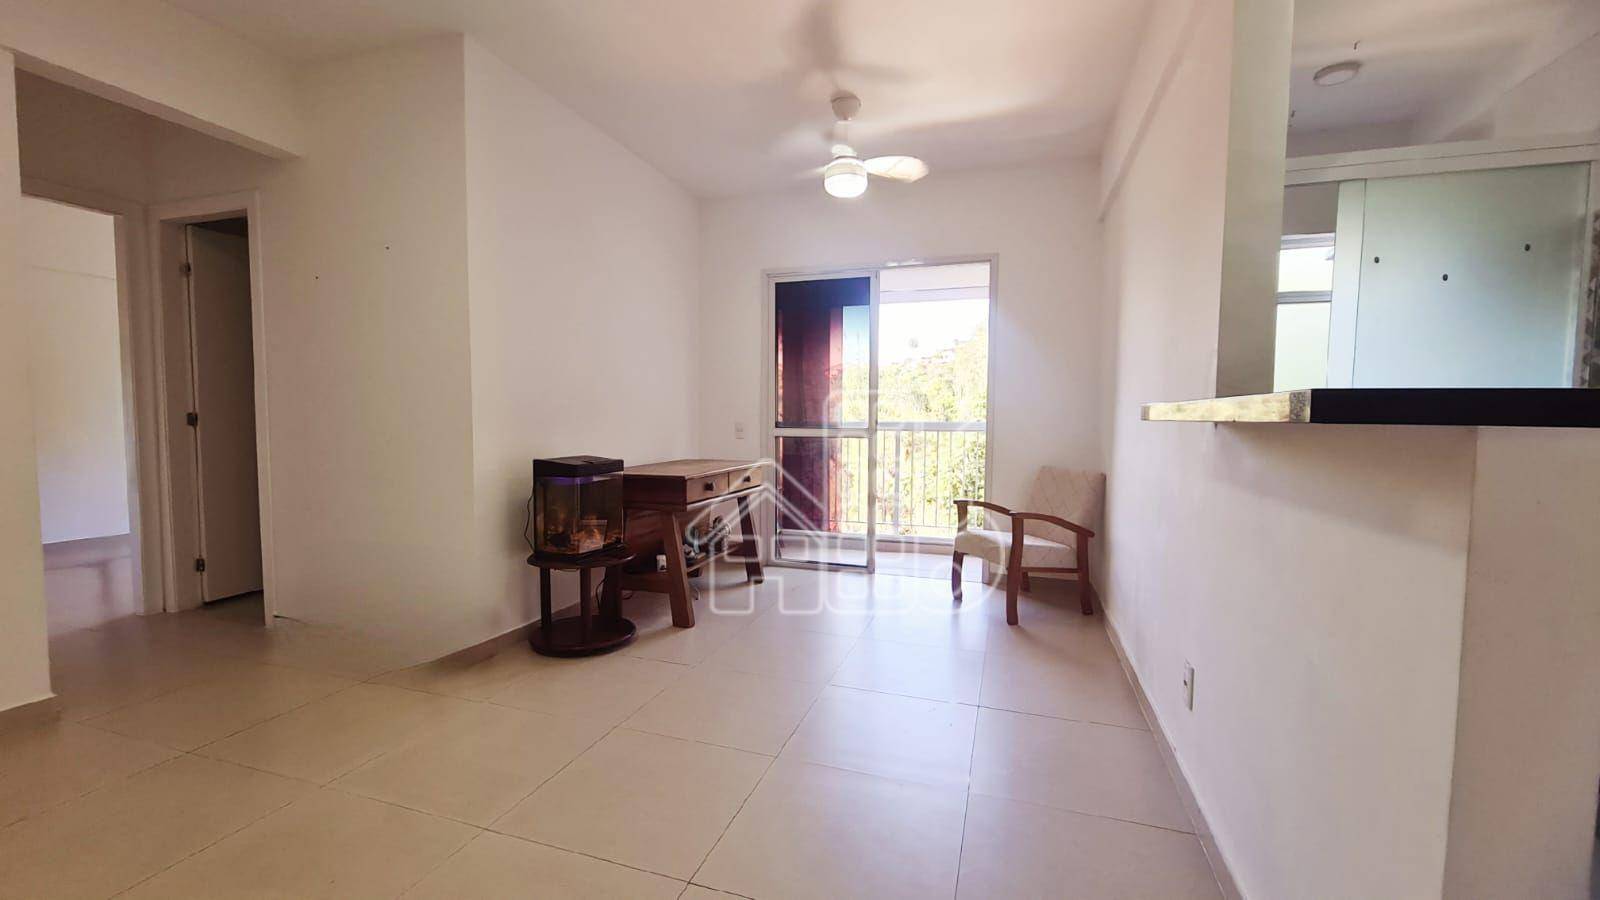 Apartamento com 2 dormitórios para alugar, 58 m² por R$ 2.513,60/mês - Fonseca - Niterói/RJ